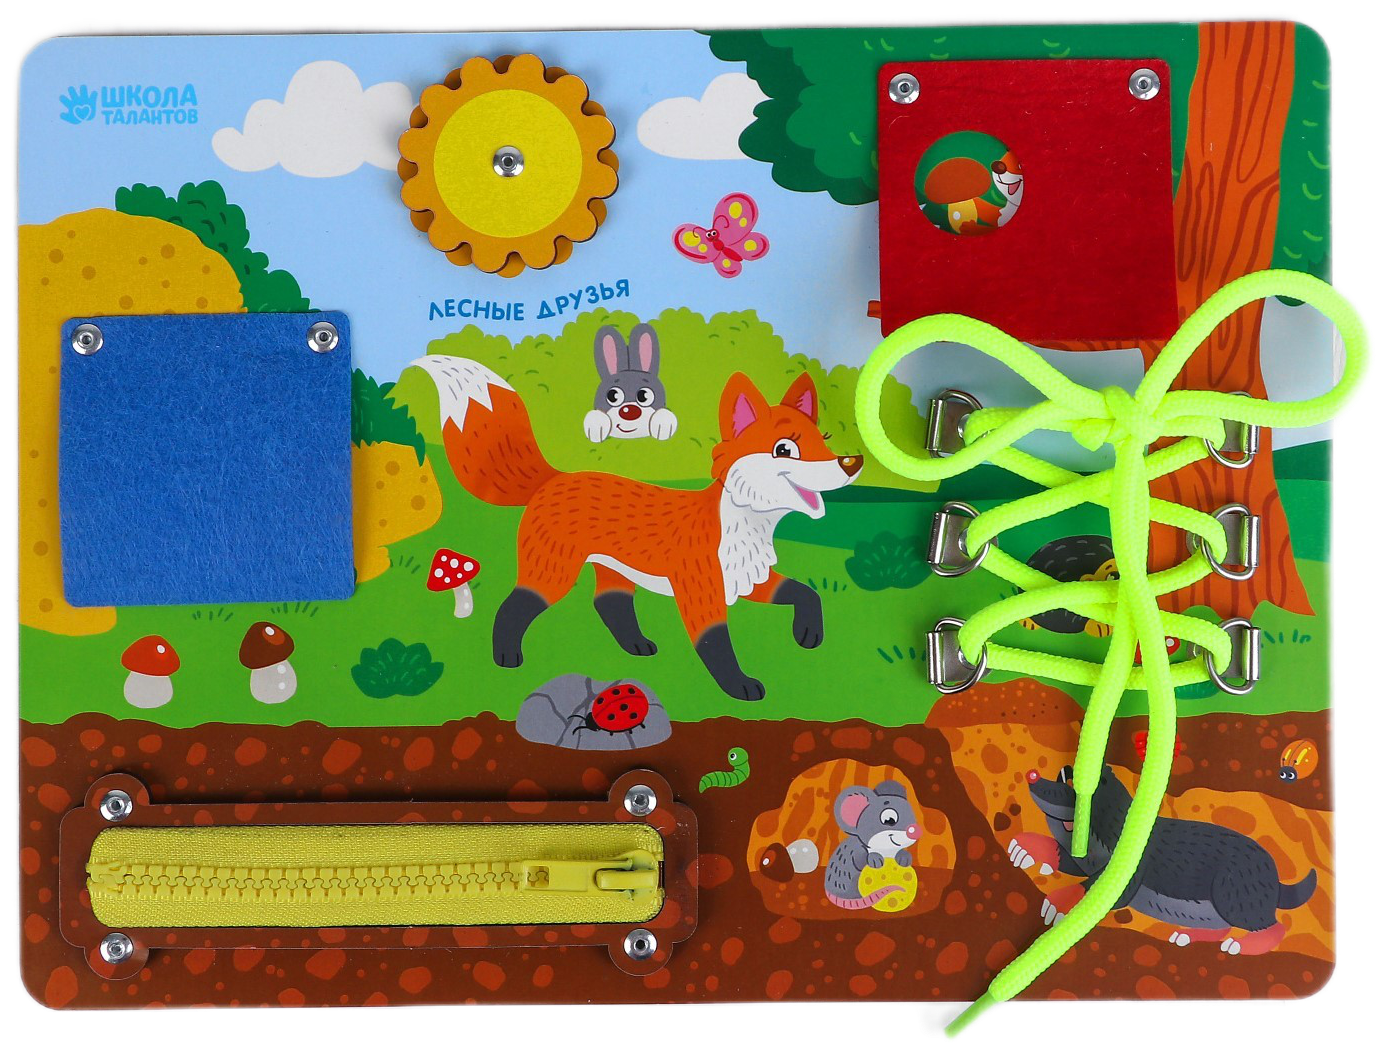 Развивающая игрушка Школа талантов Лесные друзья 3807443, разноцветный